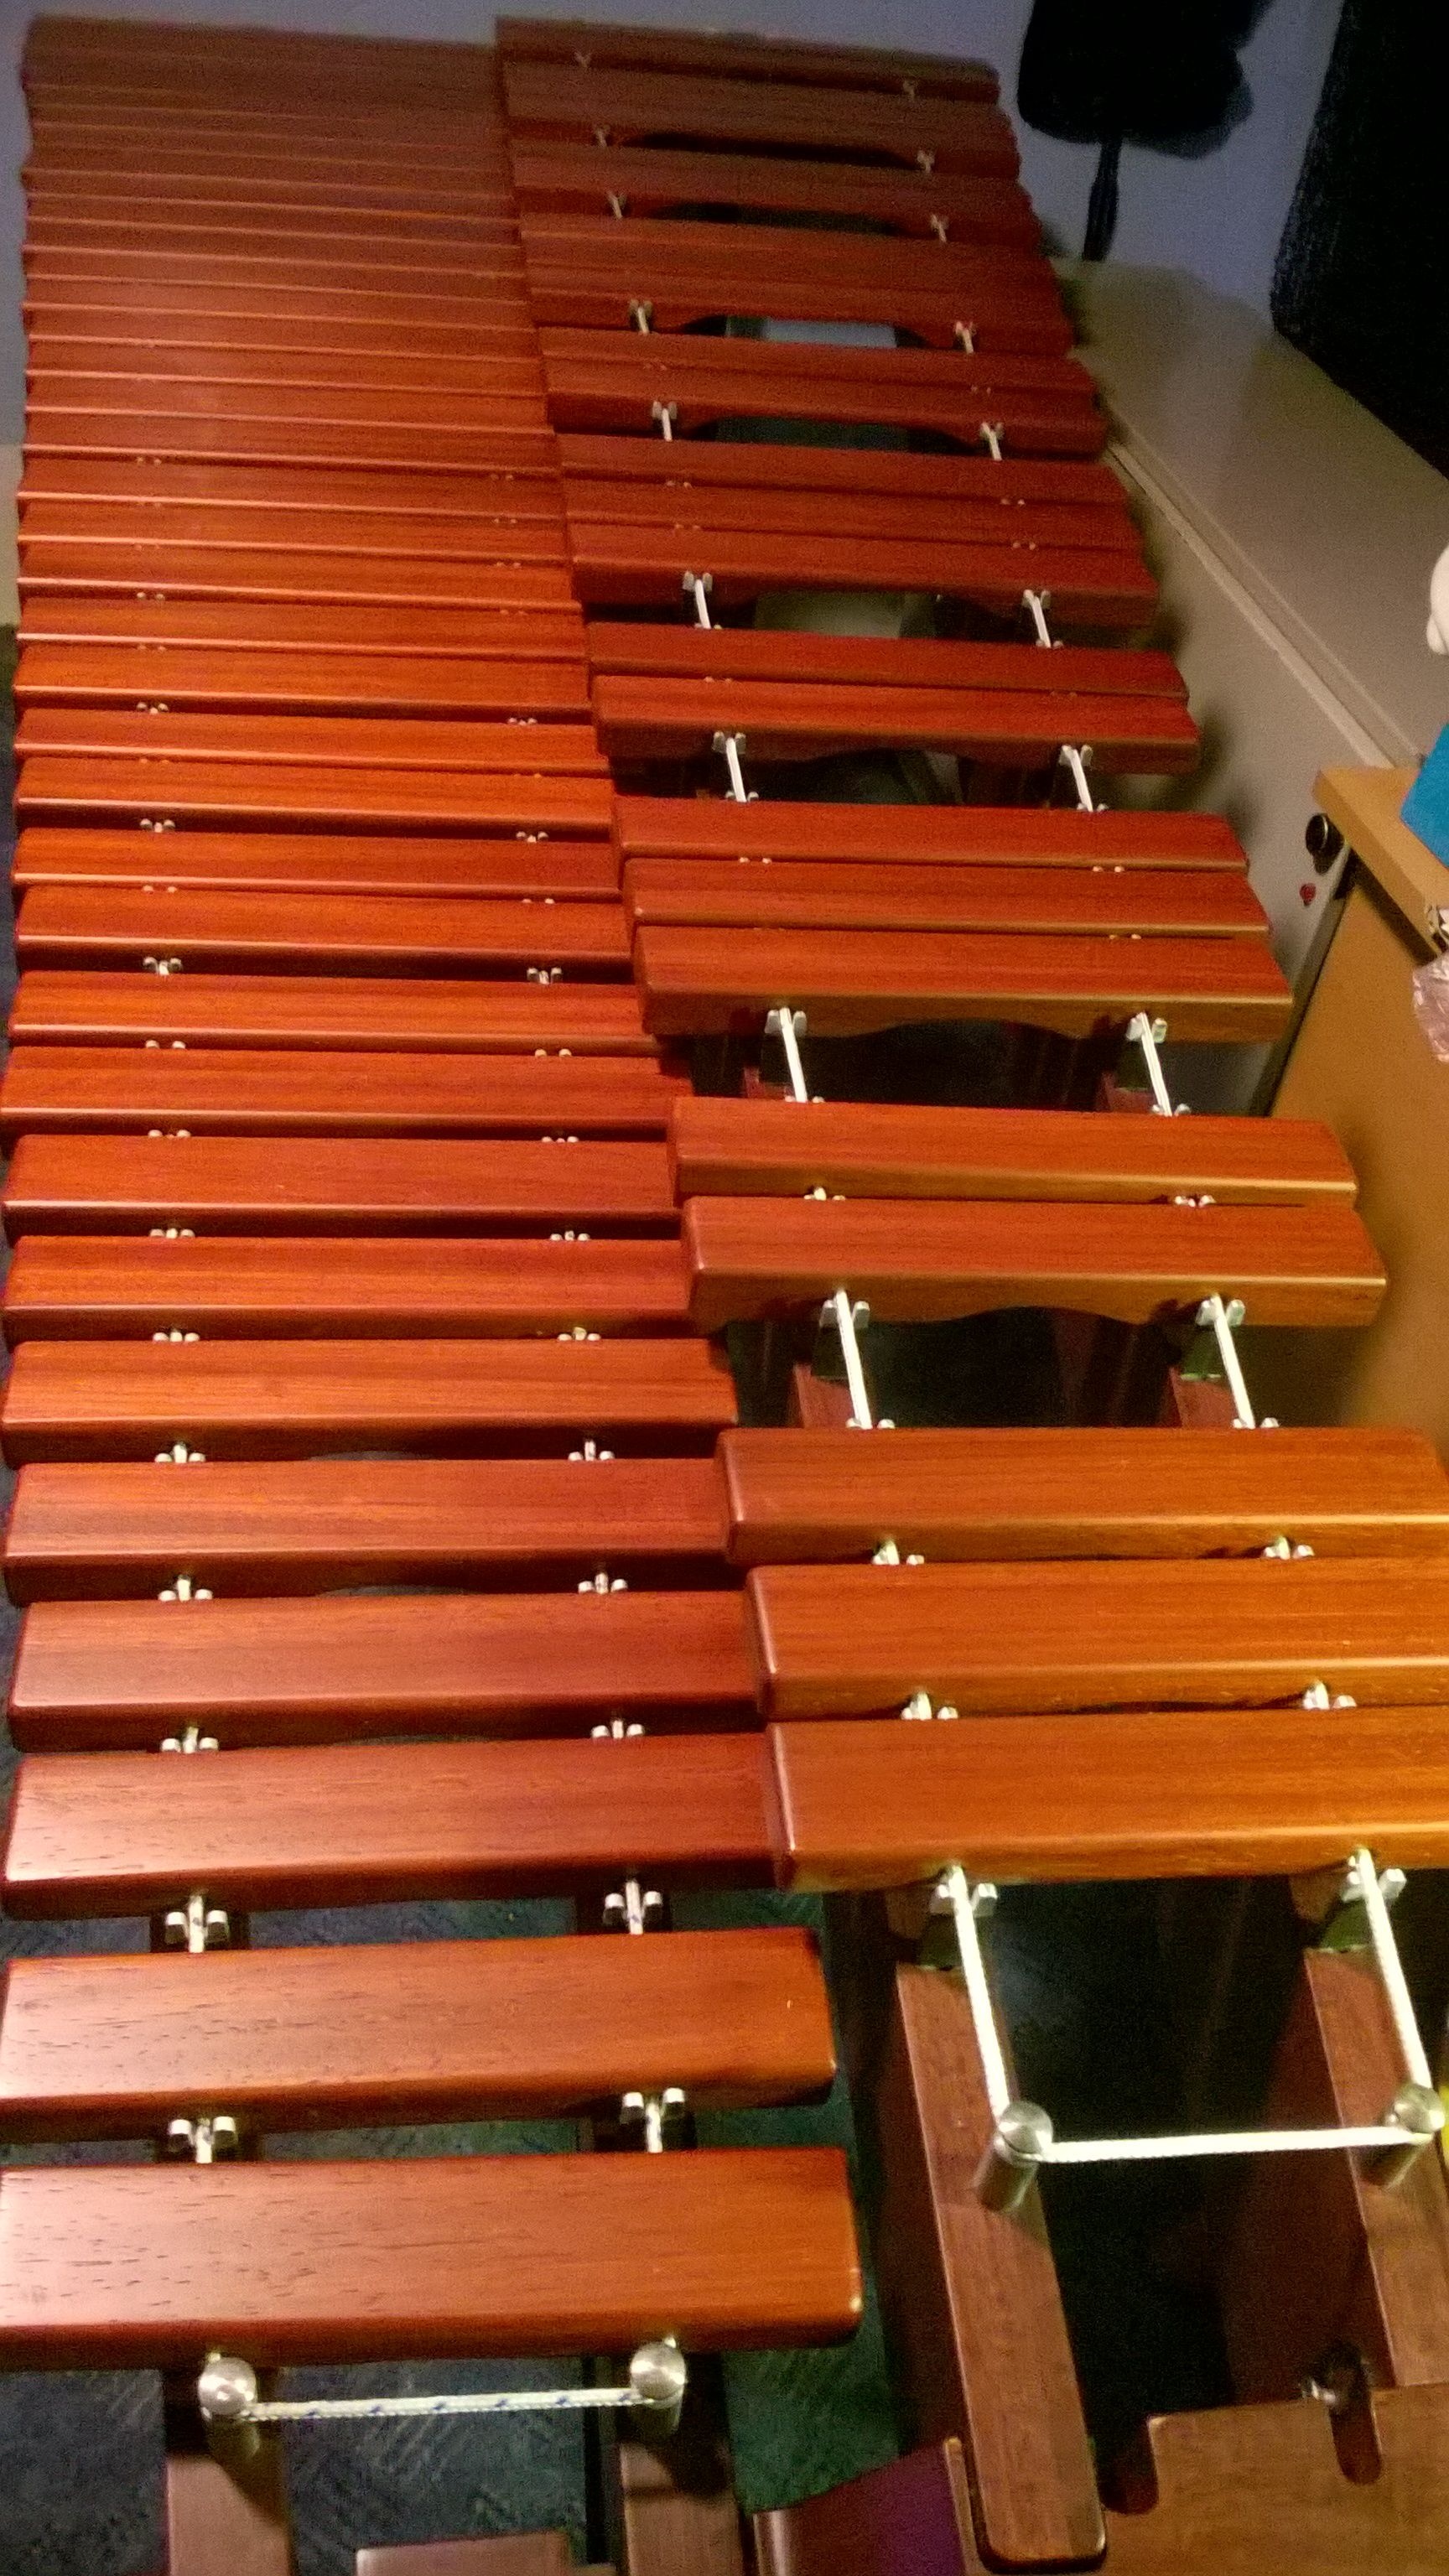 Xylophone: Marimba, Polished Hardwood, Resonator Pipes, Idiophone. 1730x3080 HD Background.